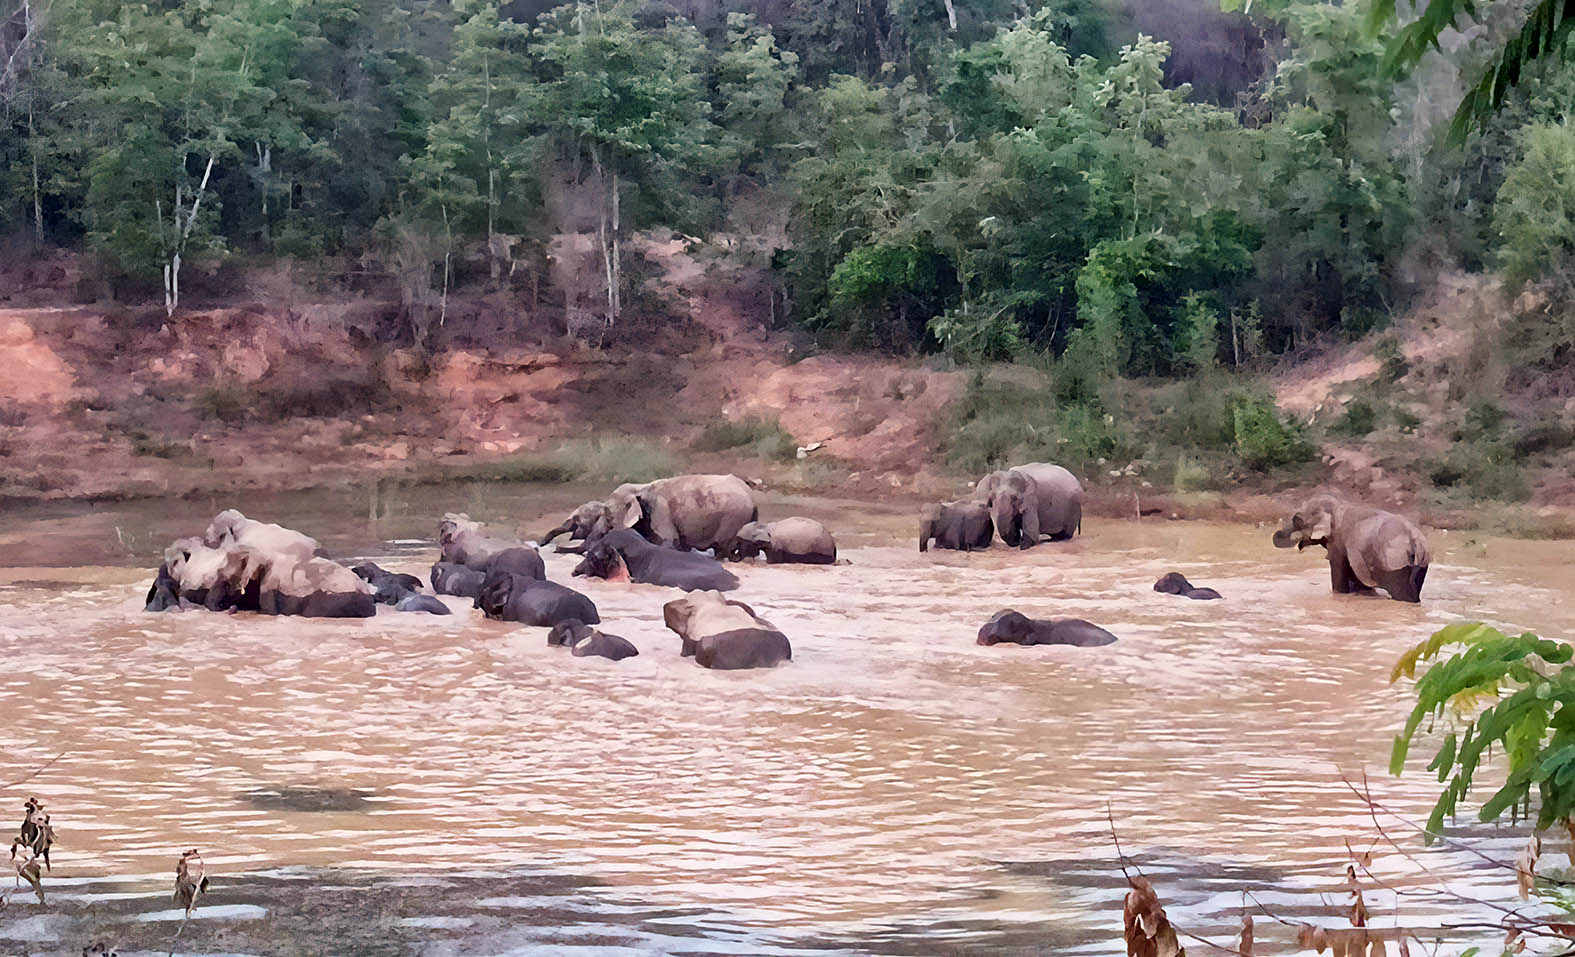 ประจวบคีรีขันธ์-ช้างป่าละอูโขลงใหญ่ 30 ตัวลงเล่นน้ำดับร้อน อวดโฉมนักท่องเที่ยว..!!